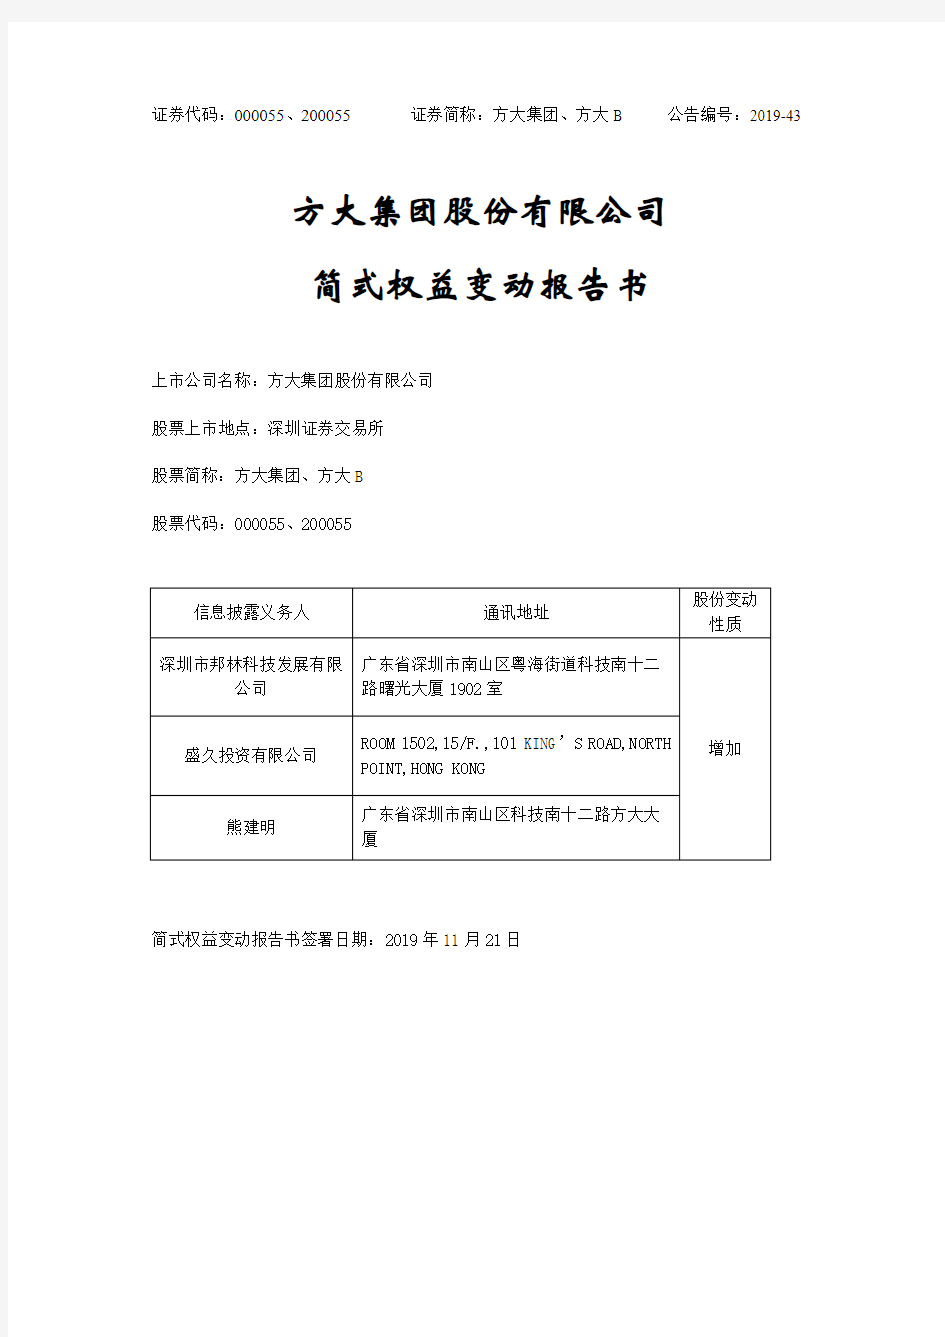 方大集团股份有限公司简式权益变动报告书.pdf